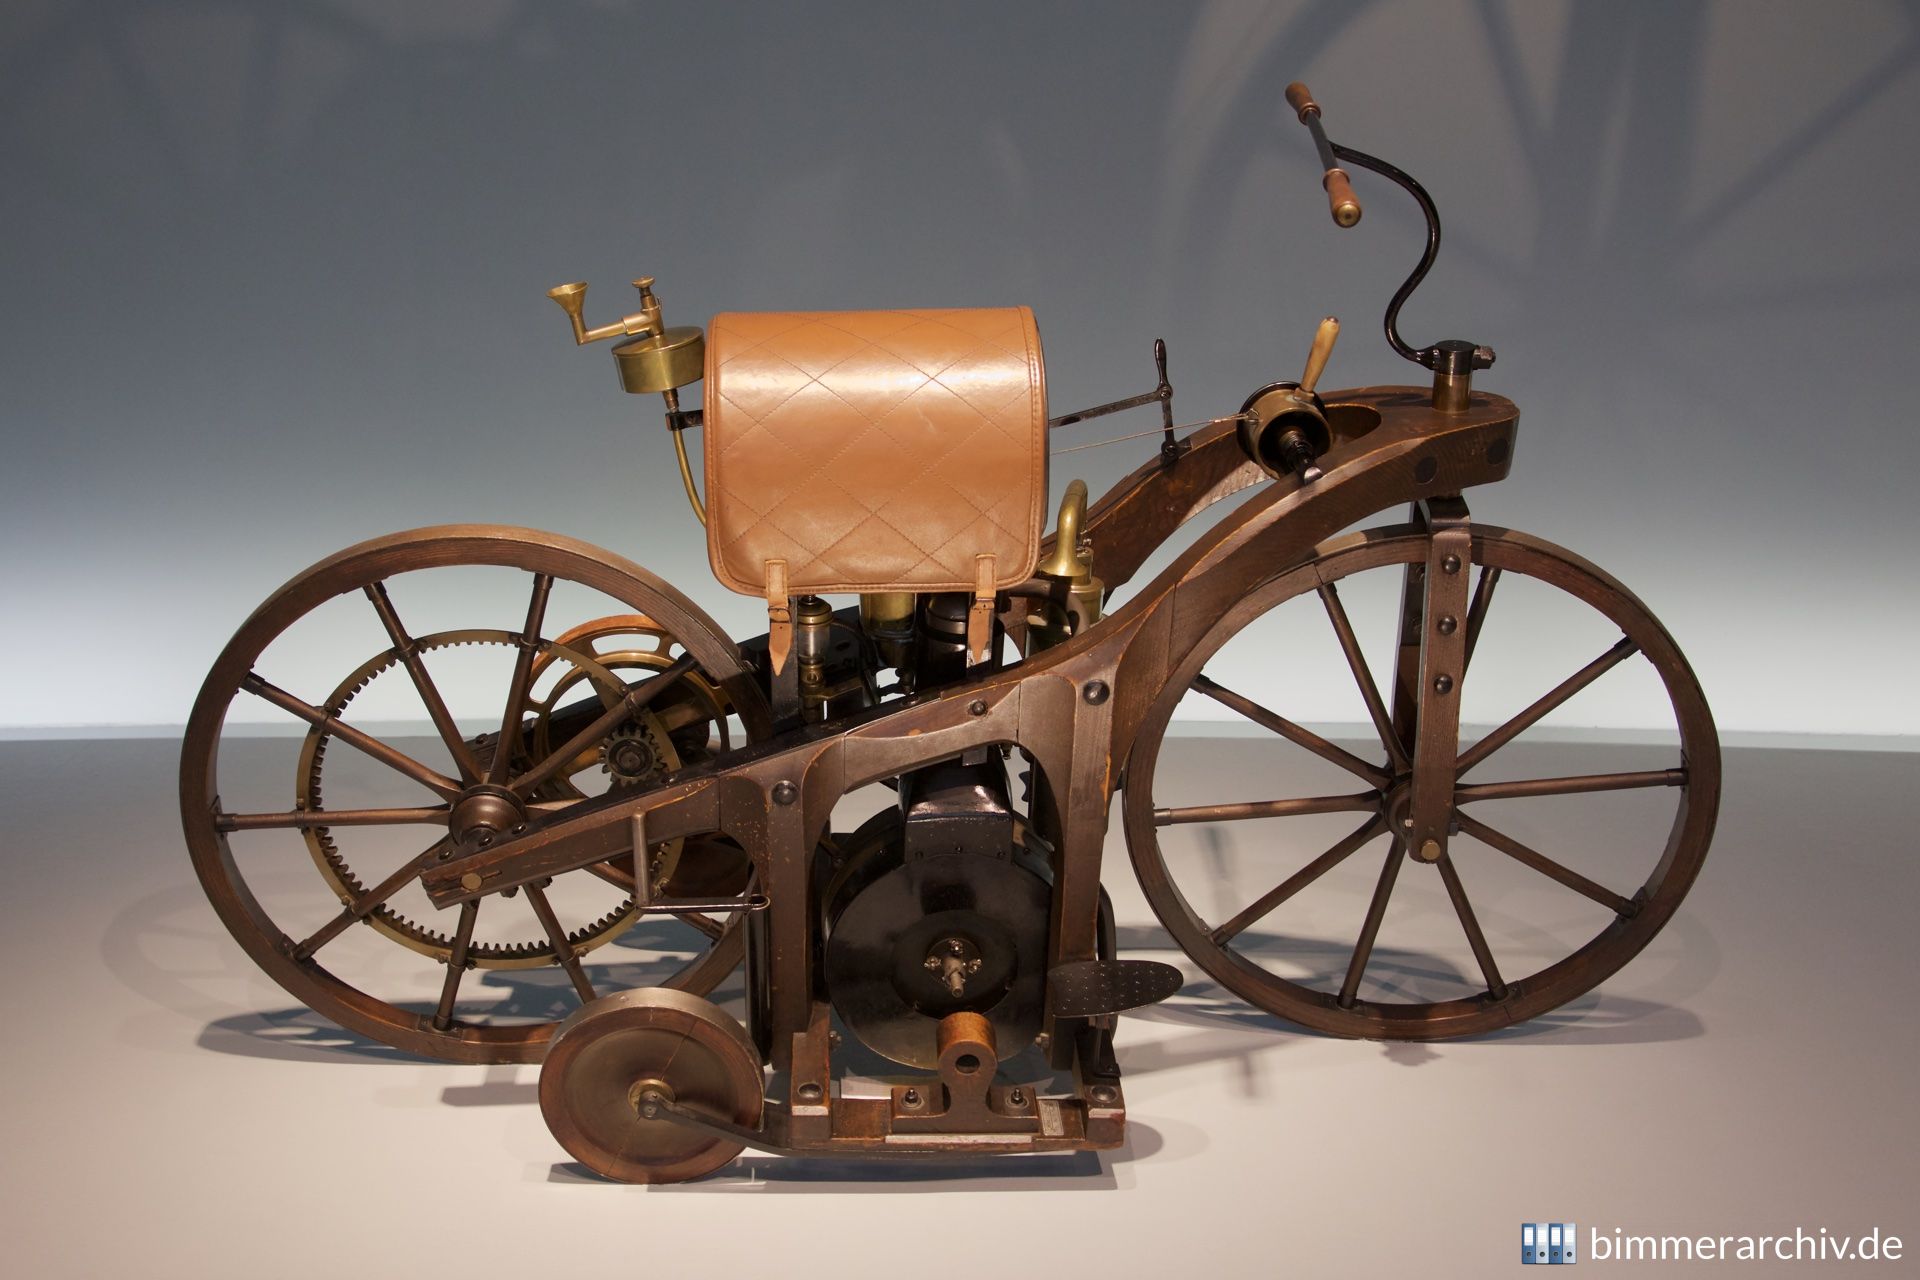 Daimler riding car (1885)